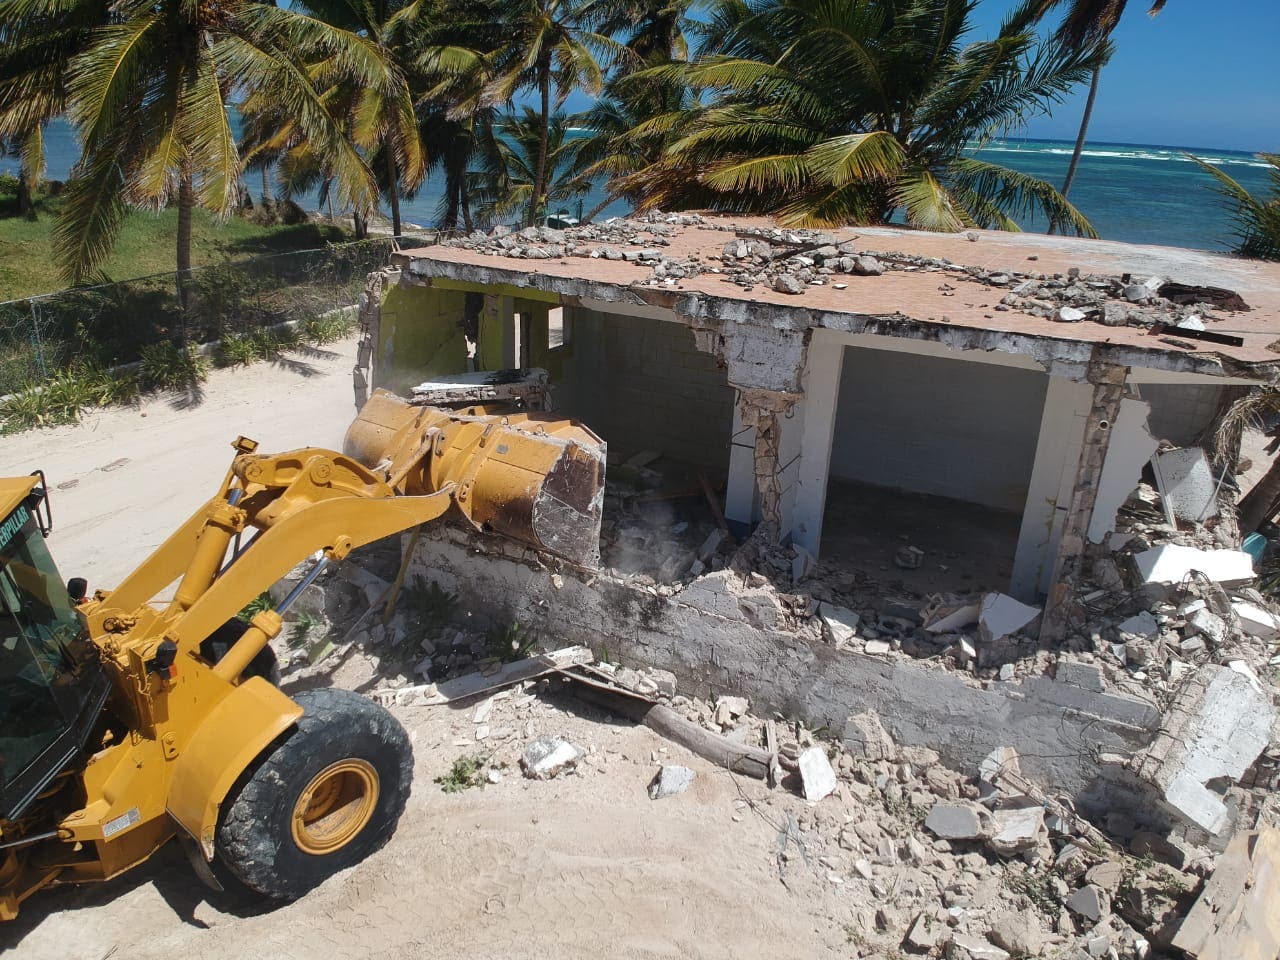 Medio Ambiente rescata área ocupada ilegalmente en playa Cabeza de Toro Punta Cana